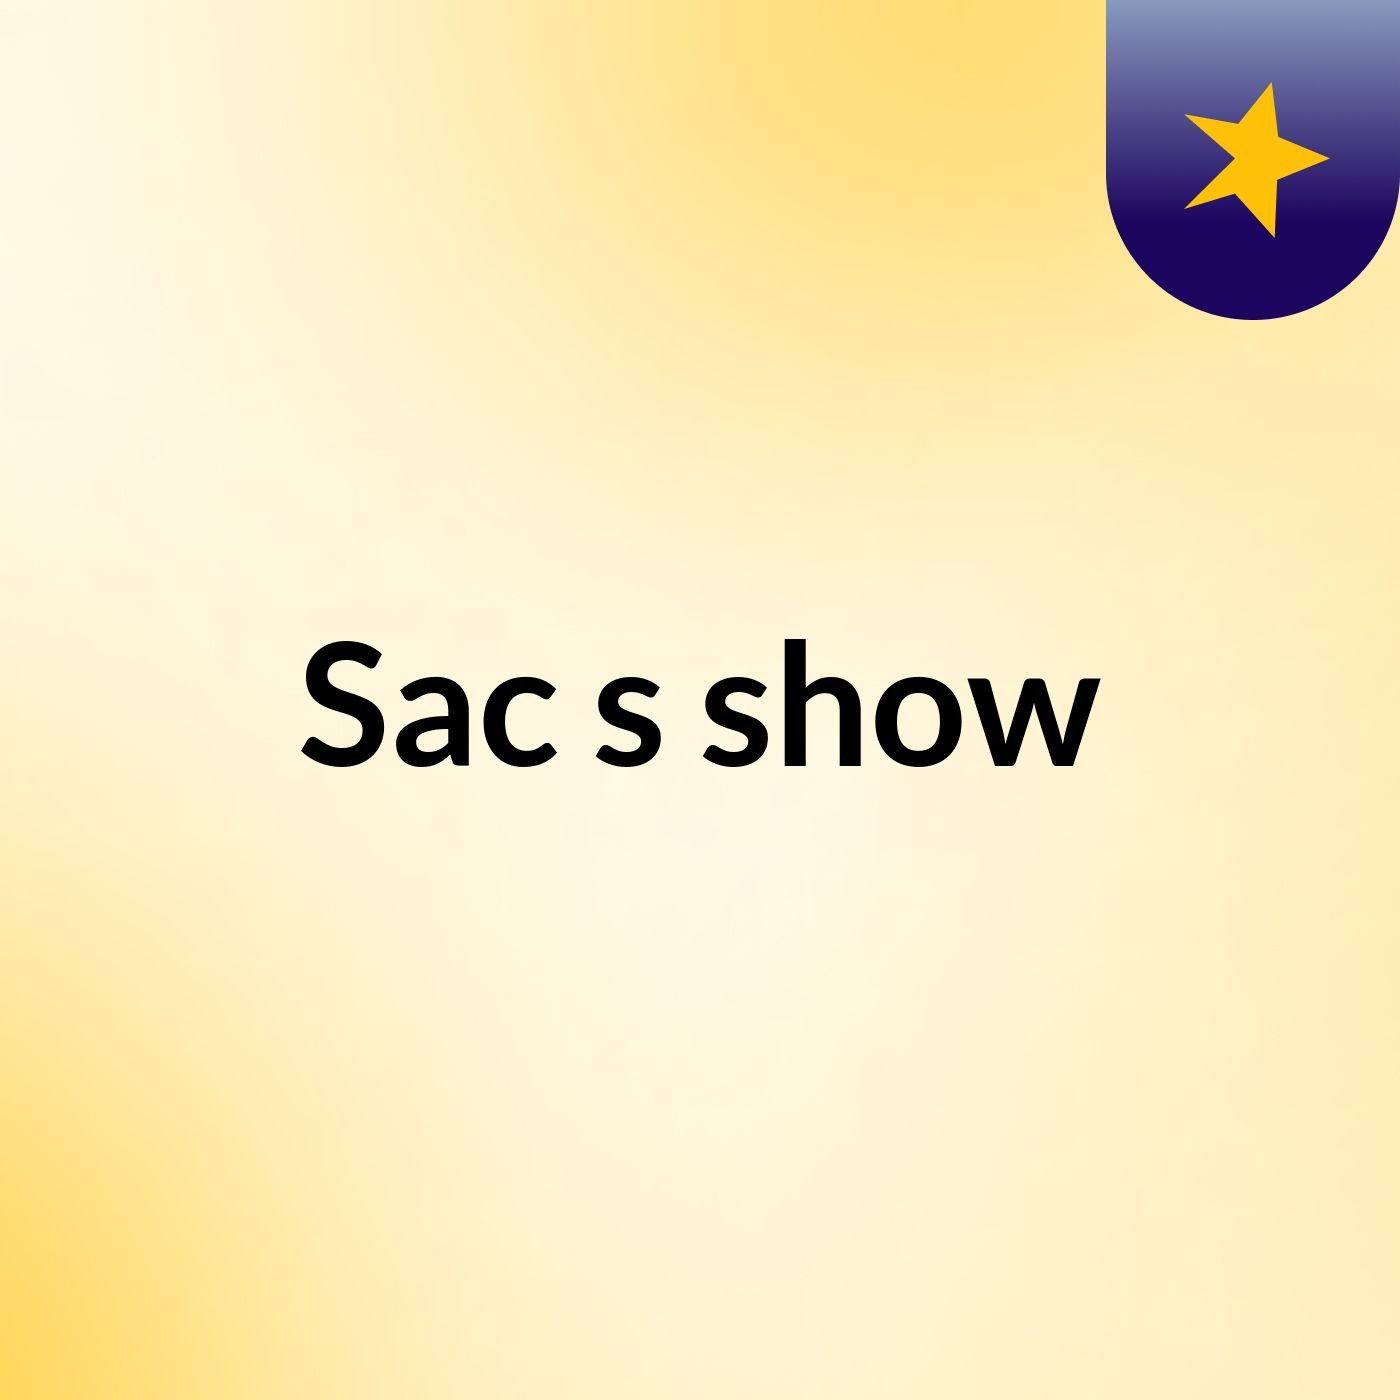 Sac's show